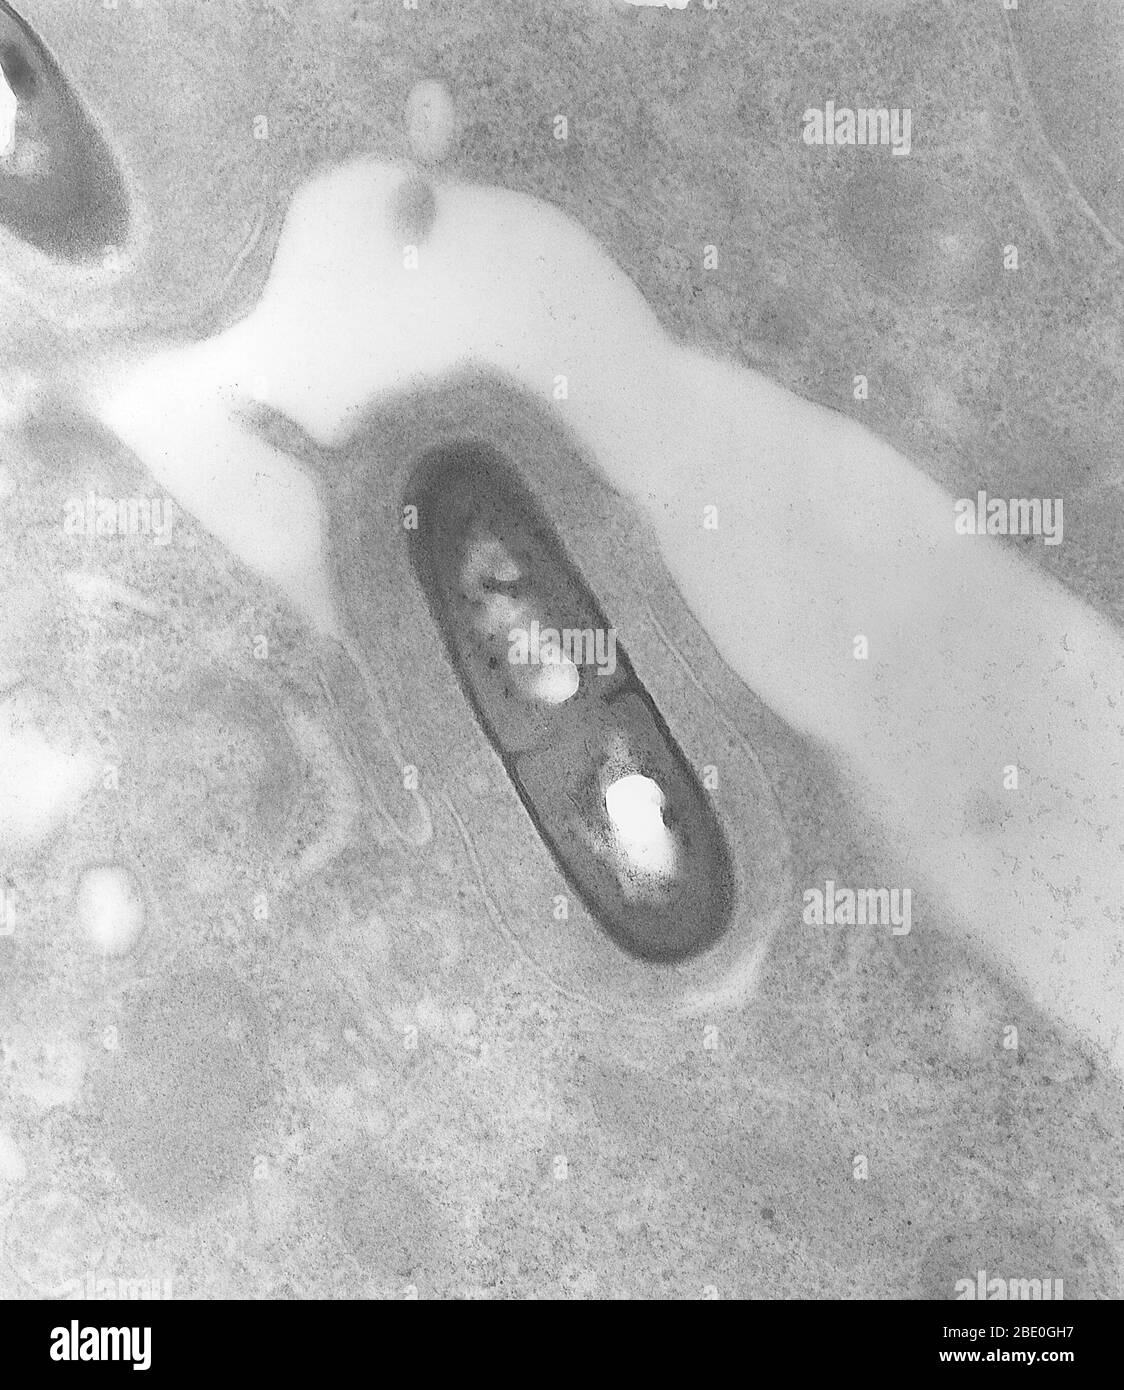 Transmission Electron Micrograph (TEM) eines Listeria Bakteriums im Gewebe. Listeria ist eine Bakteriengattung, die bis 1992 10 bekannte Arten enthielt, die jeweils zwei Unterarten enthielten. Ab 2014 wurden weitere fünf Arten identifiziert. Benannt nach dem britischen Pionier der sterilen Chirurgie Joseph Lister, erhielt die Gattung ihren heutigen Namen im Jahr 1940. Listeria-Arten sind gram-positiv, stäbchenförmig und fakultativ anaerob und produzieren keine Endosporen. Der wichtigste Erreger der Gattung Listeria ist L. monocytogenes. Es ist in der Regel der Erreger der relativ seltenen bakteriellen Krankheitsliste Stockfoto